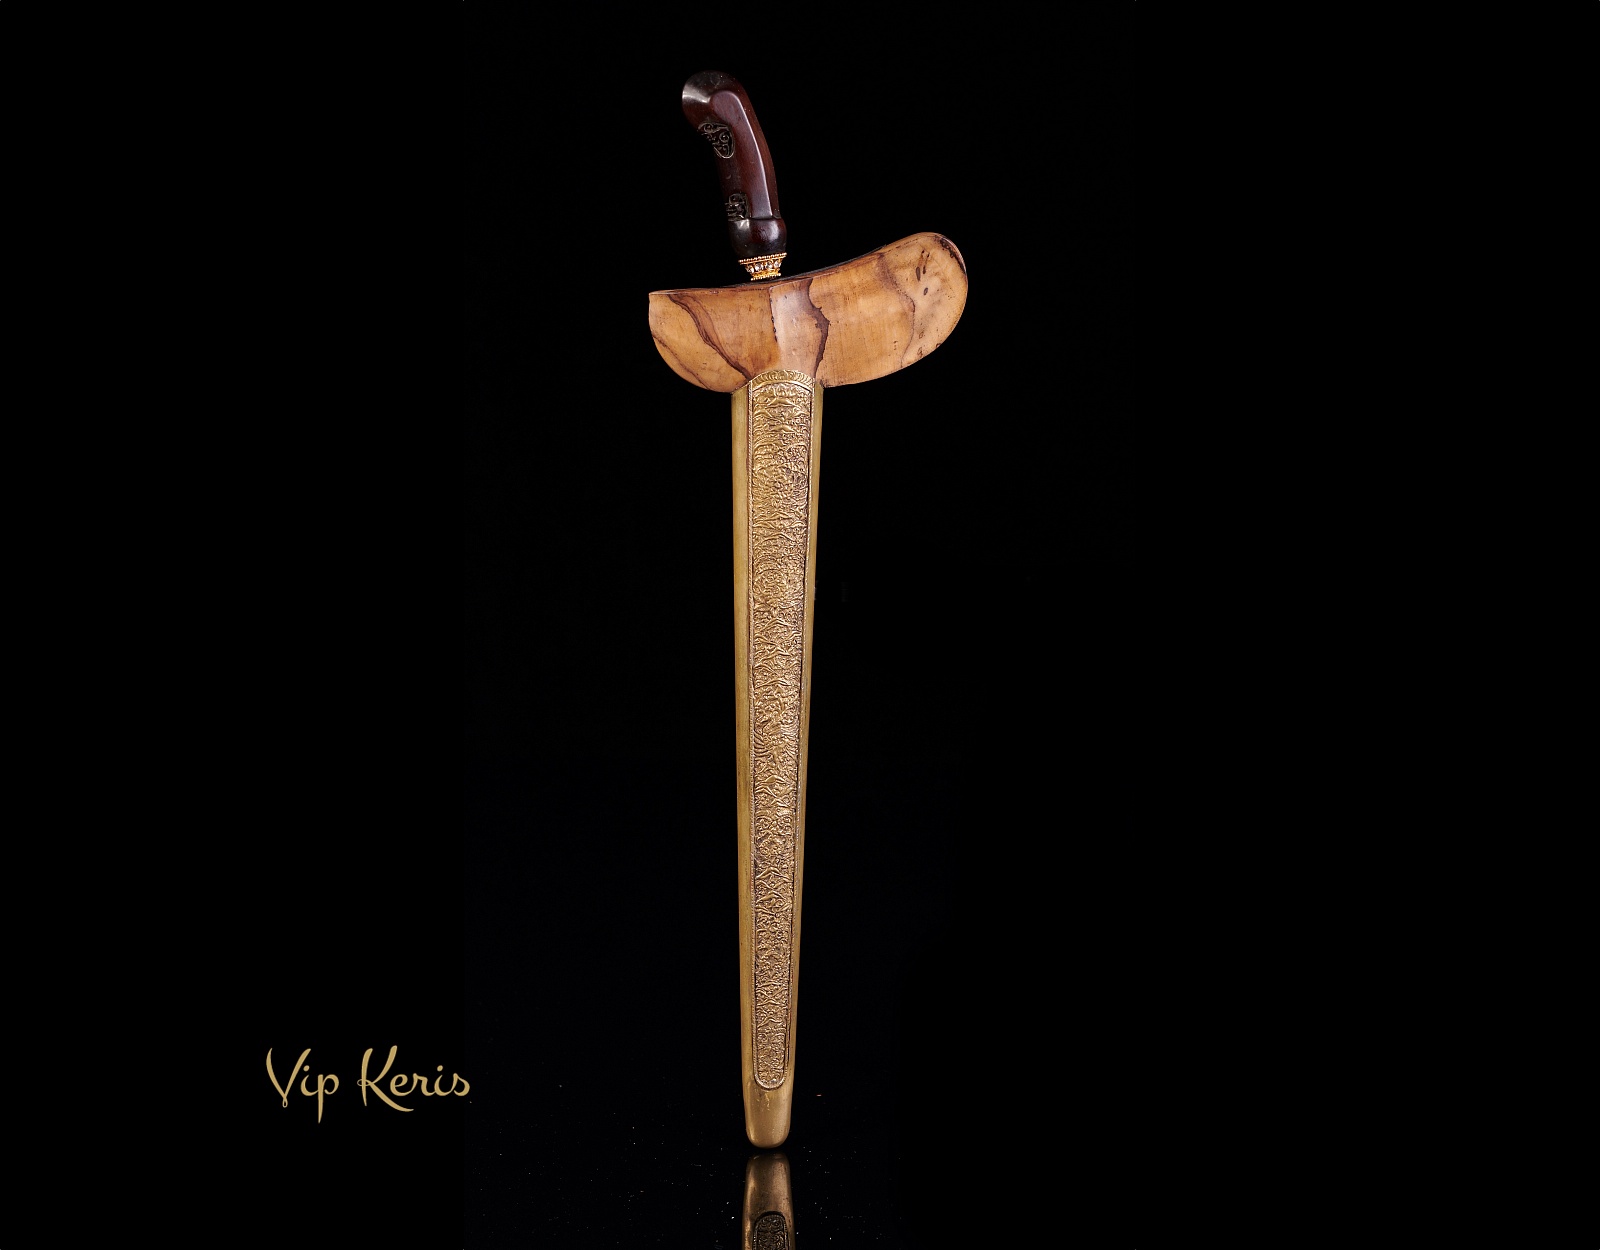 Ритуальный кинжал Крис Johan mangan, целитель фото VipKeris